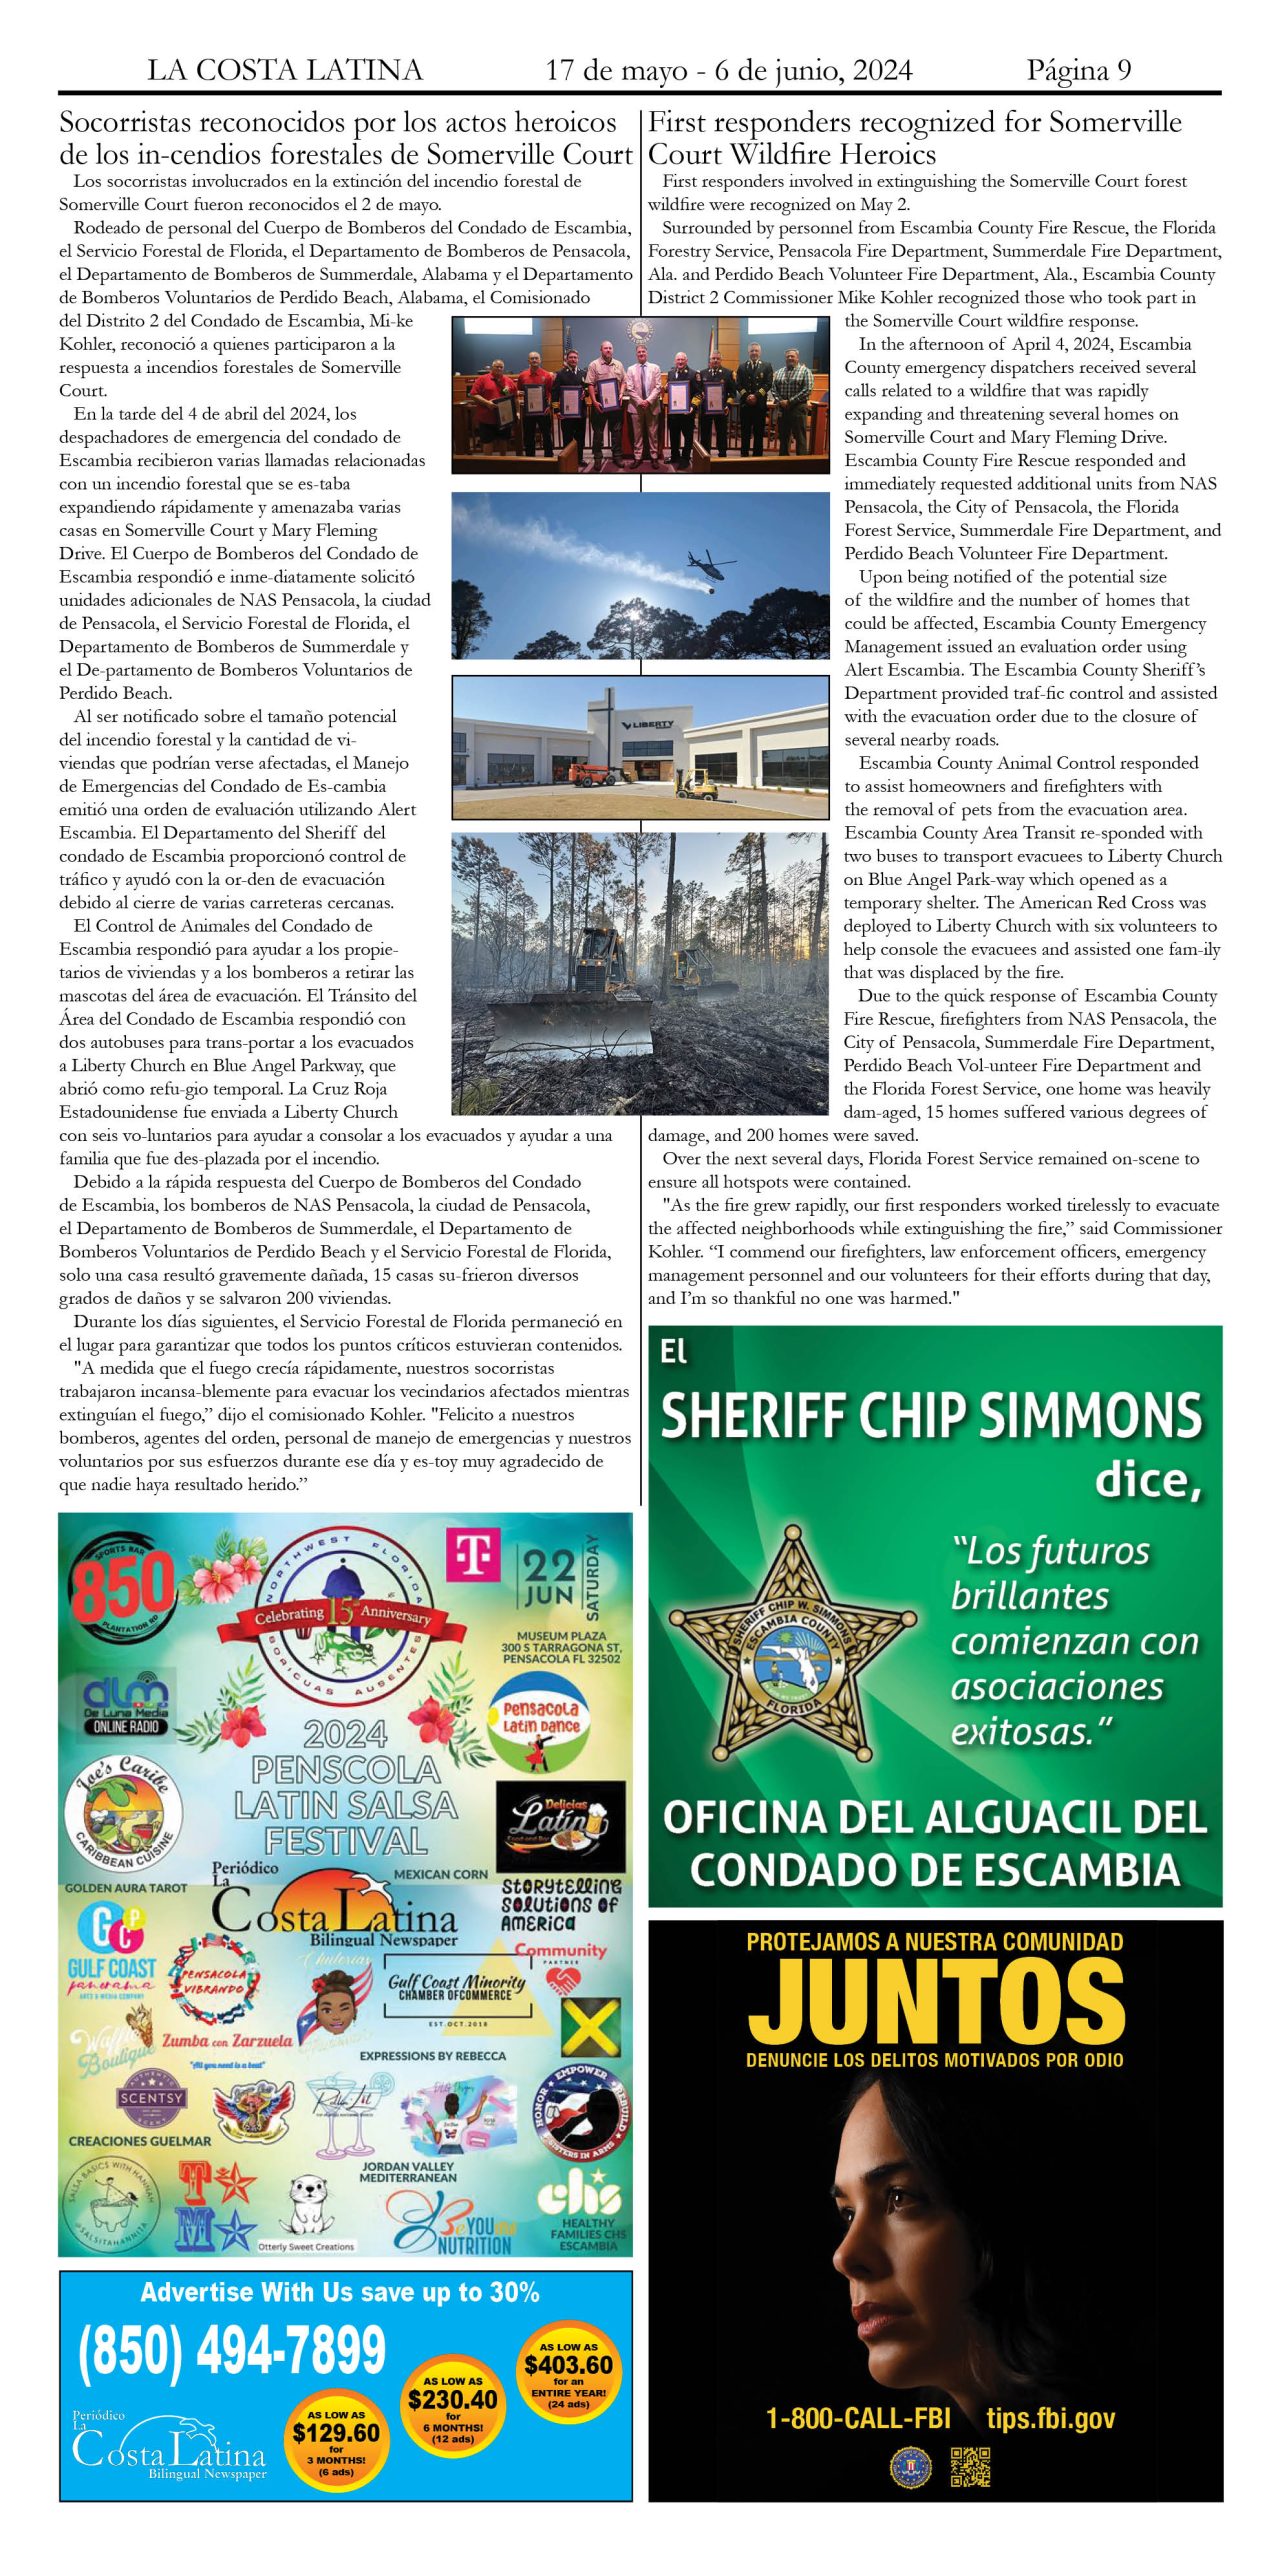 La Costa Latina May 17 - June 7, 2024 page 9